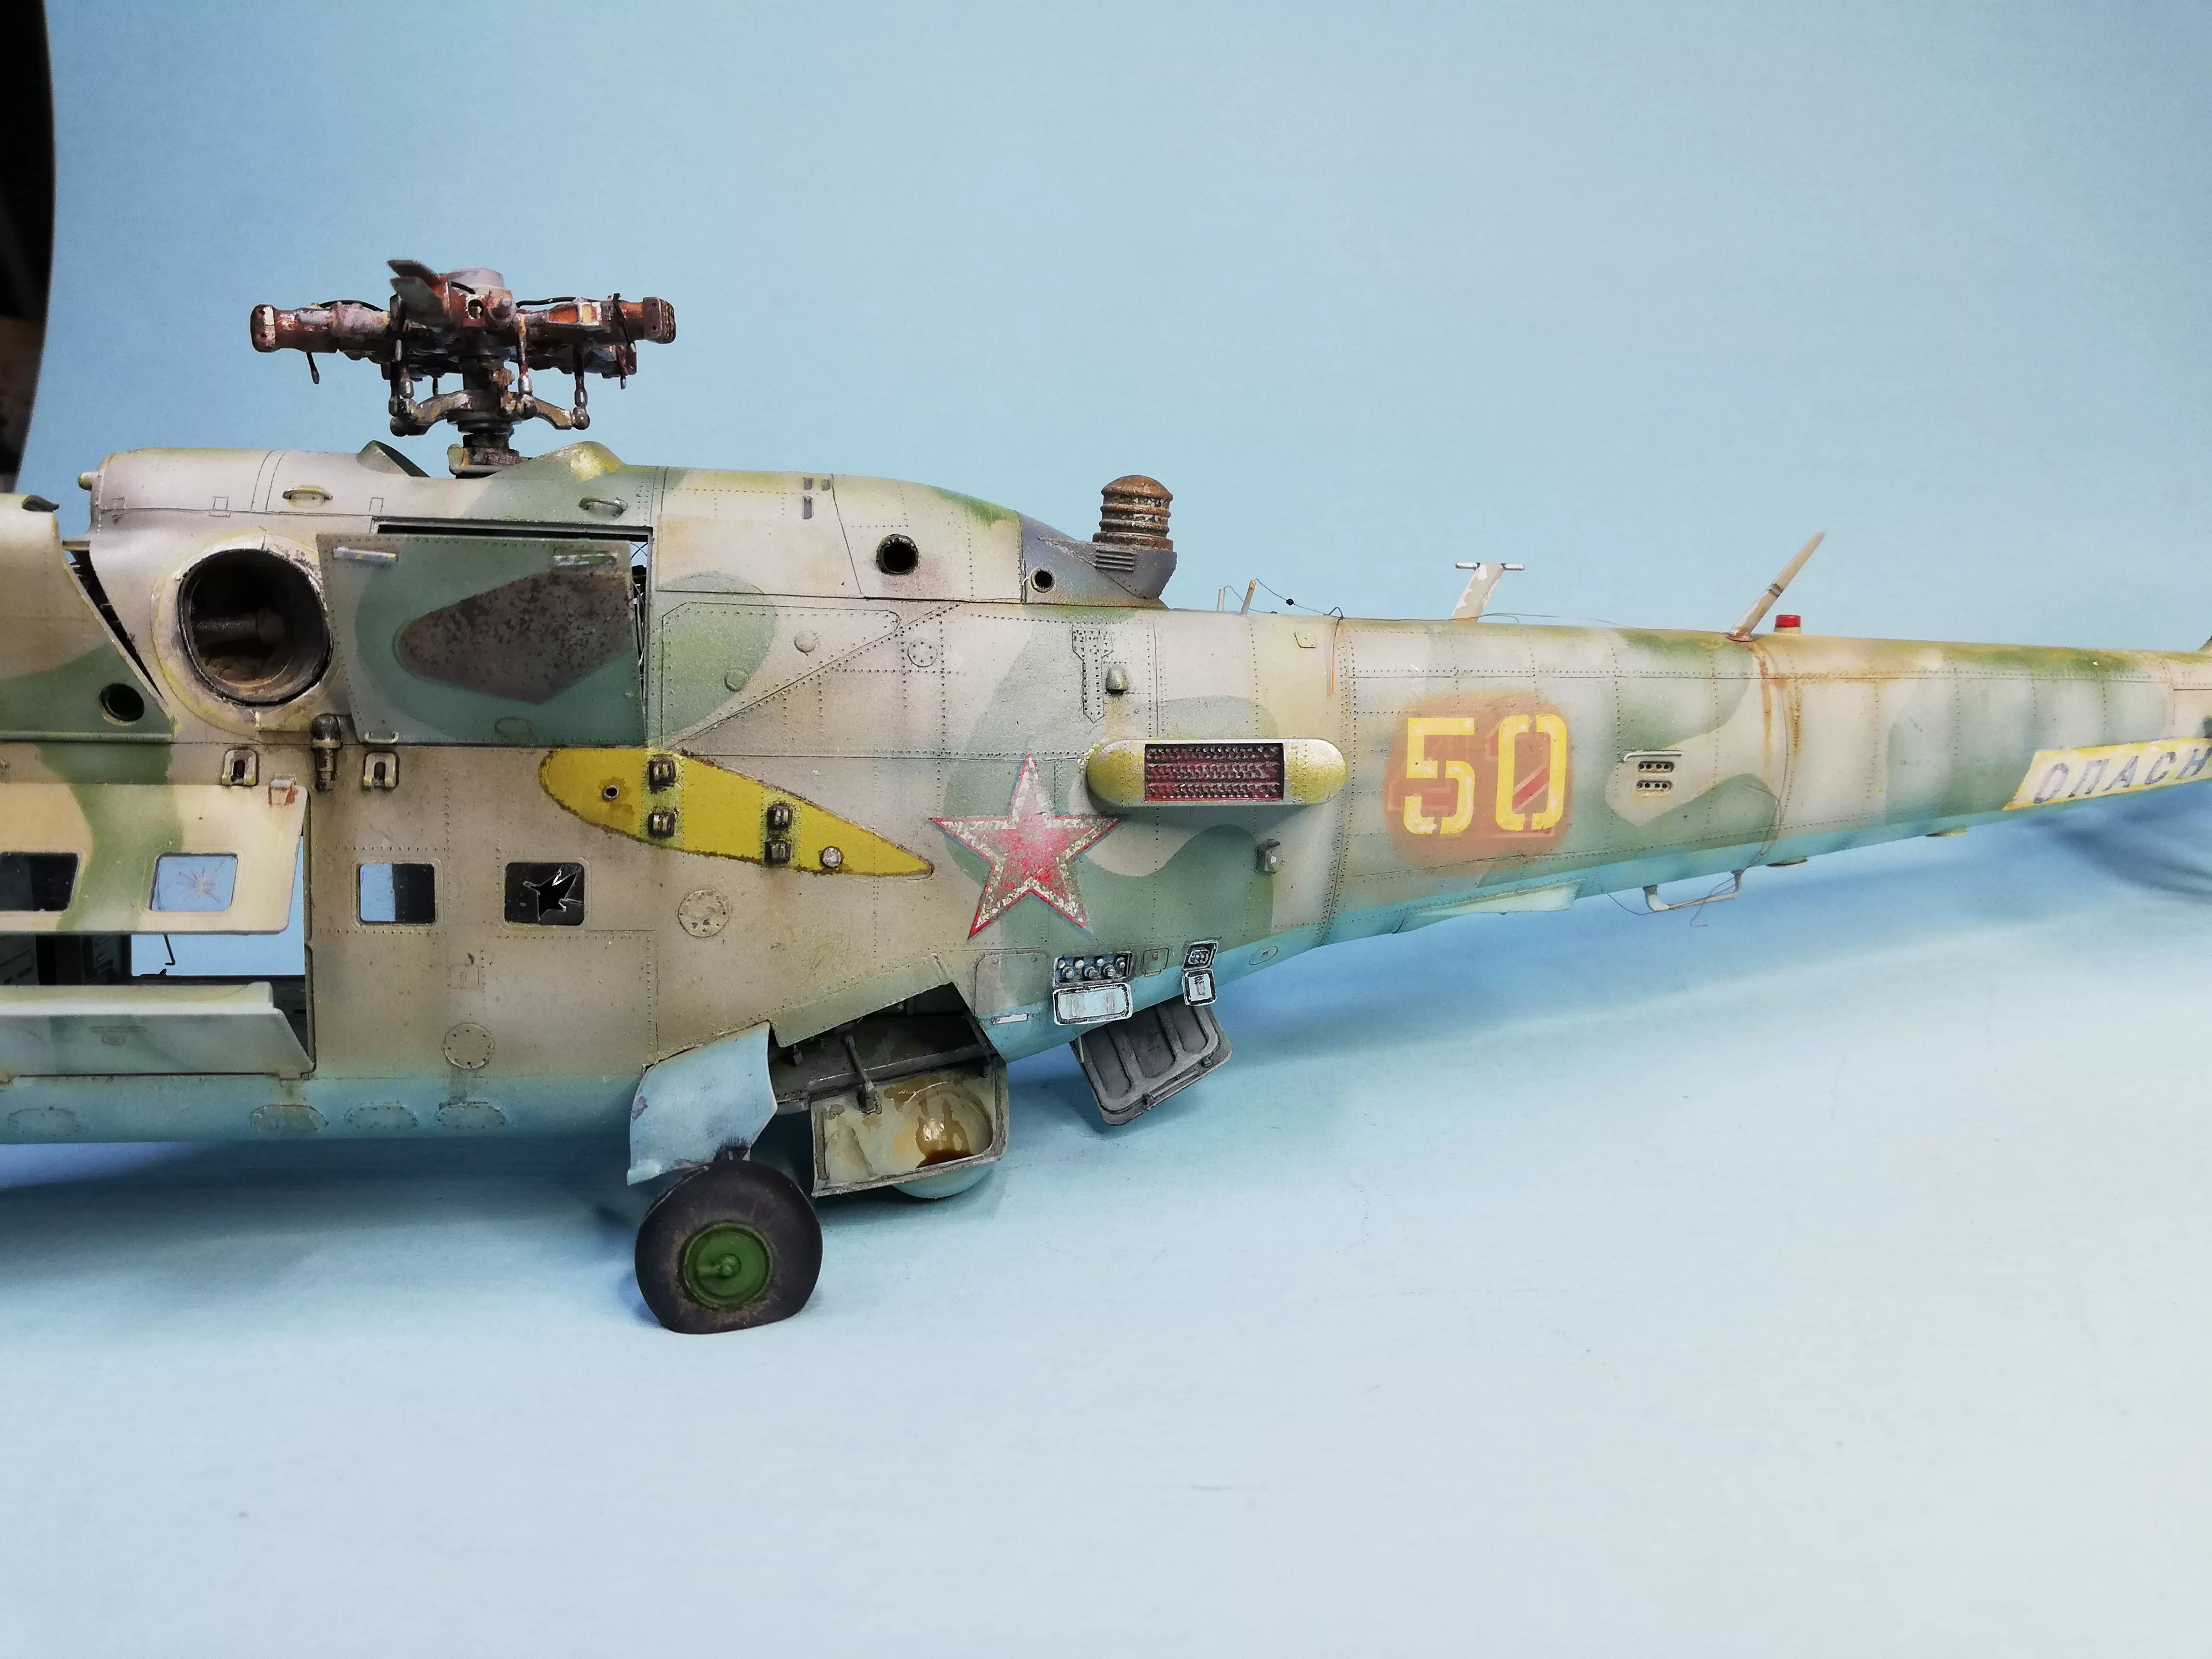 Советский ударный вертолет Ми-24В/ВП